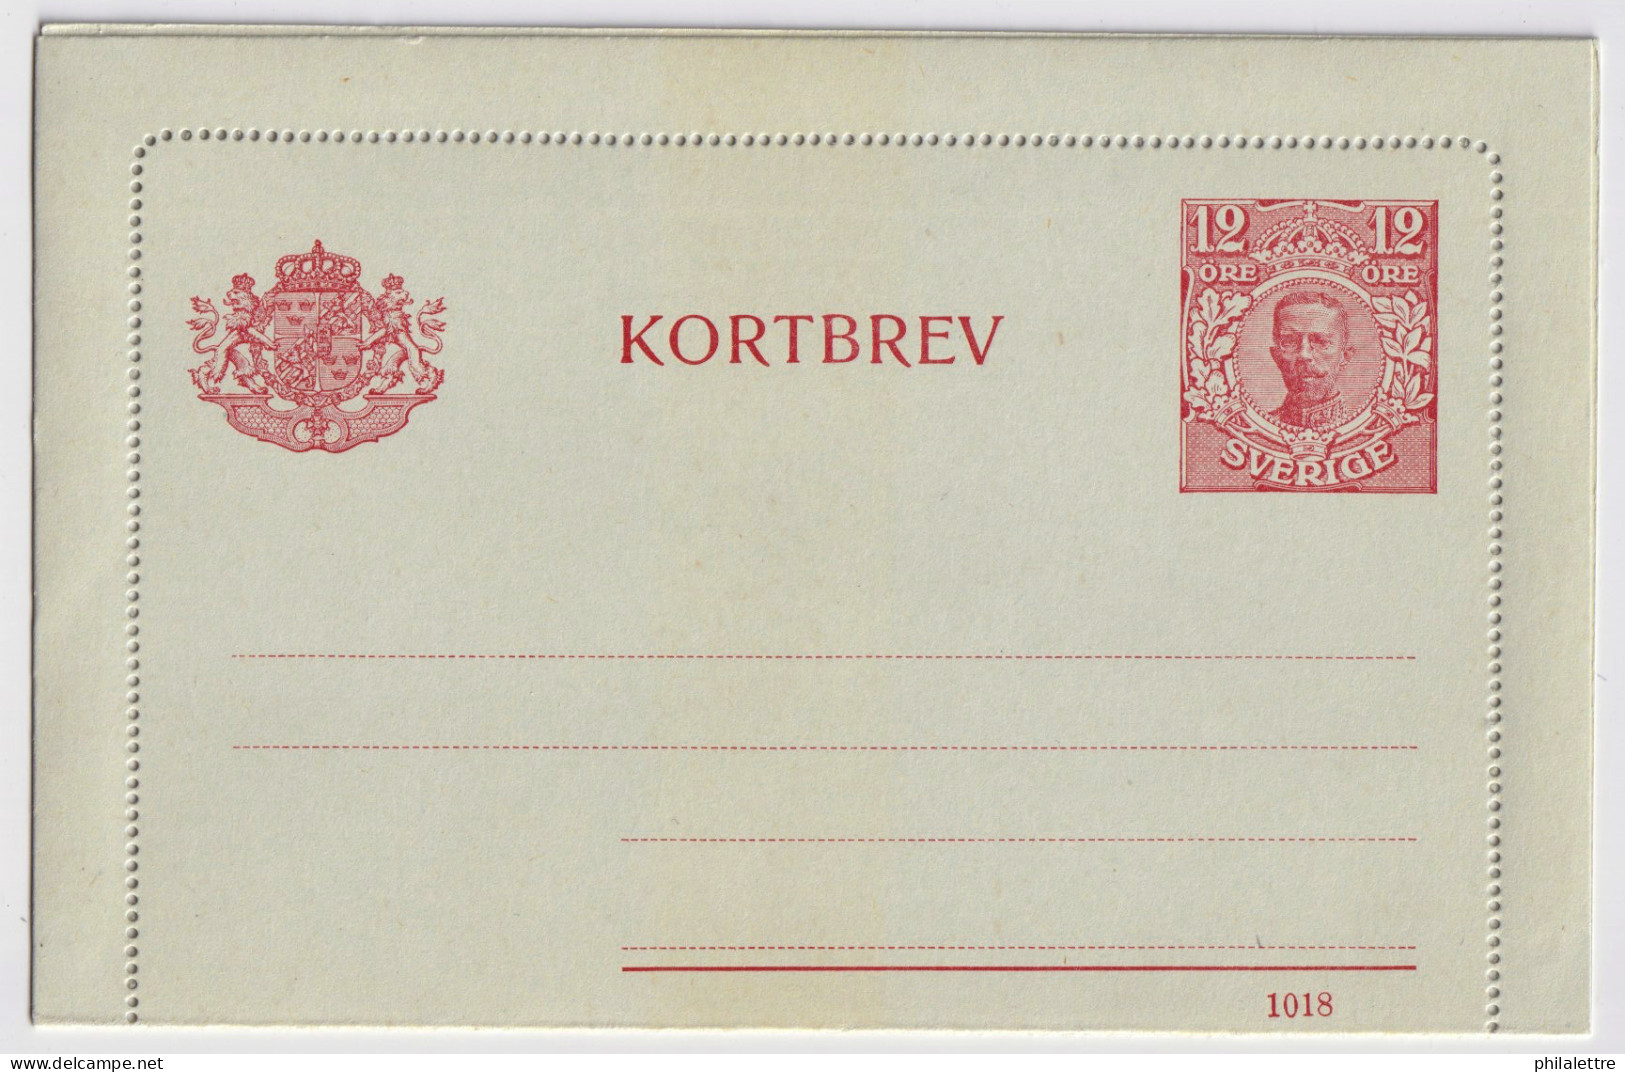 SUÈDE / SWEDEN - 1918 - Letter-Card Mi.K14 12ö Red (d.1018) Unused - Very Fine - Postal Stationery